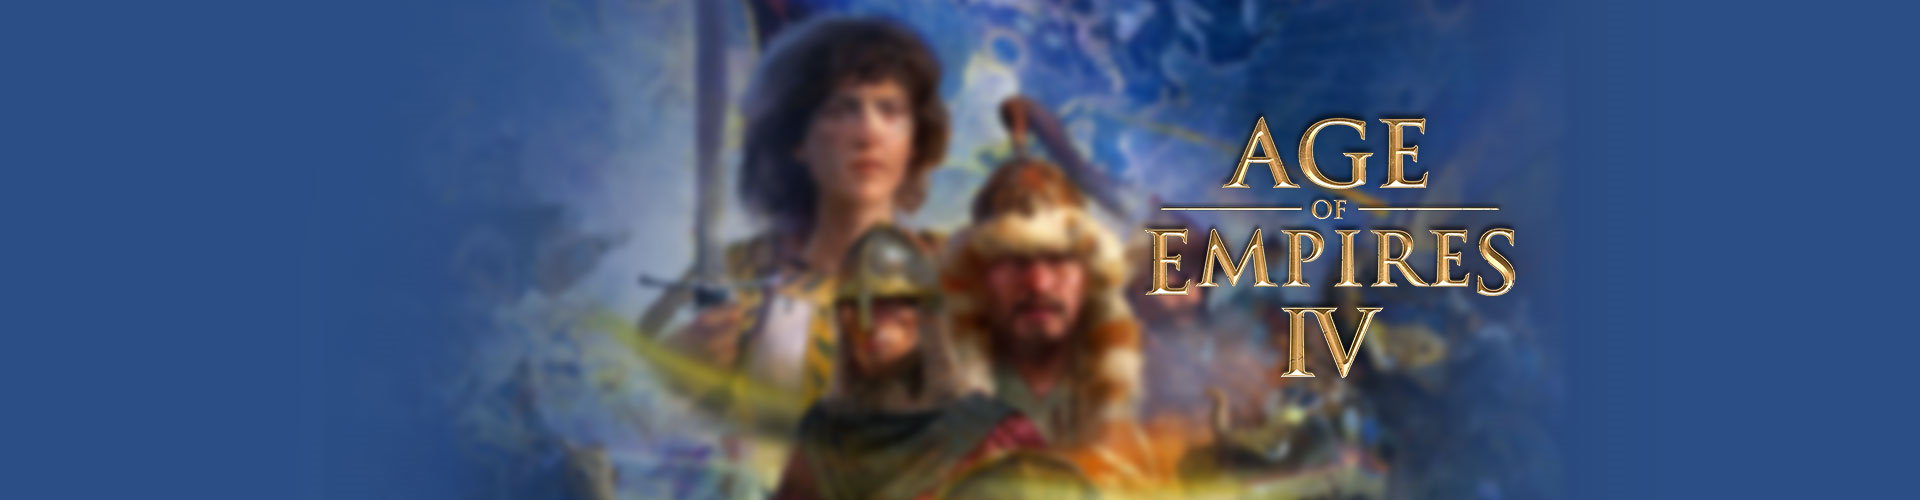 Configuration PC minimale, recommandée pour jouer à Age of Empires 4